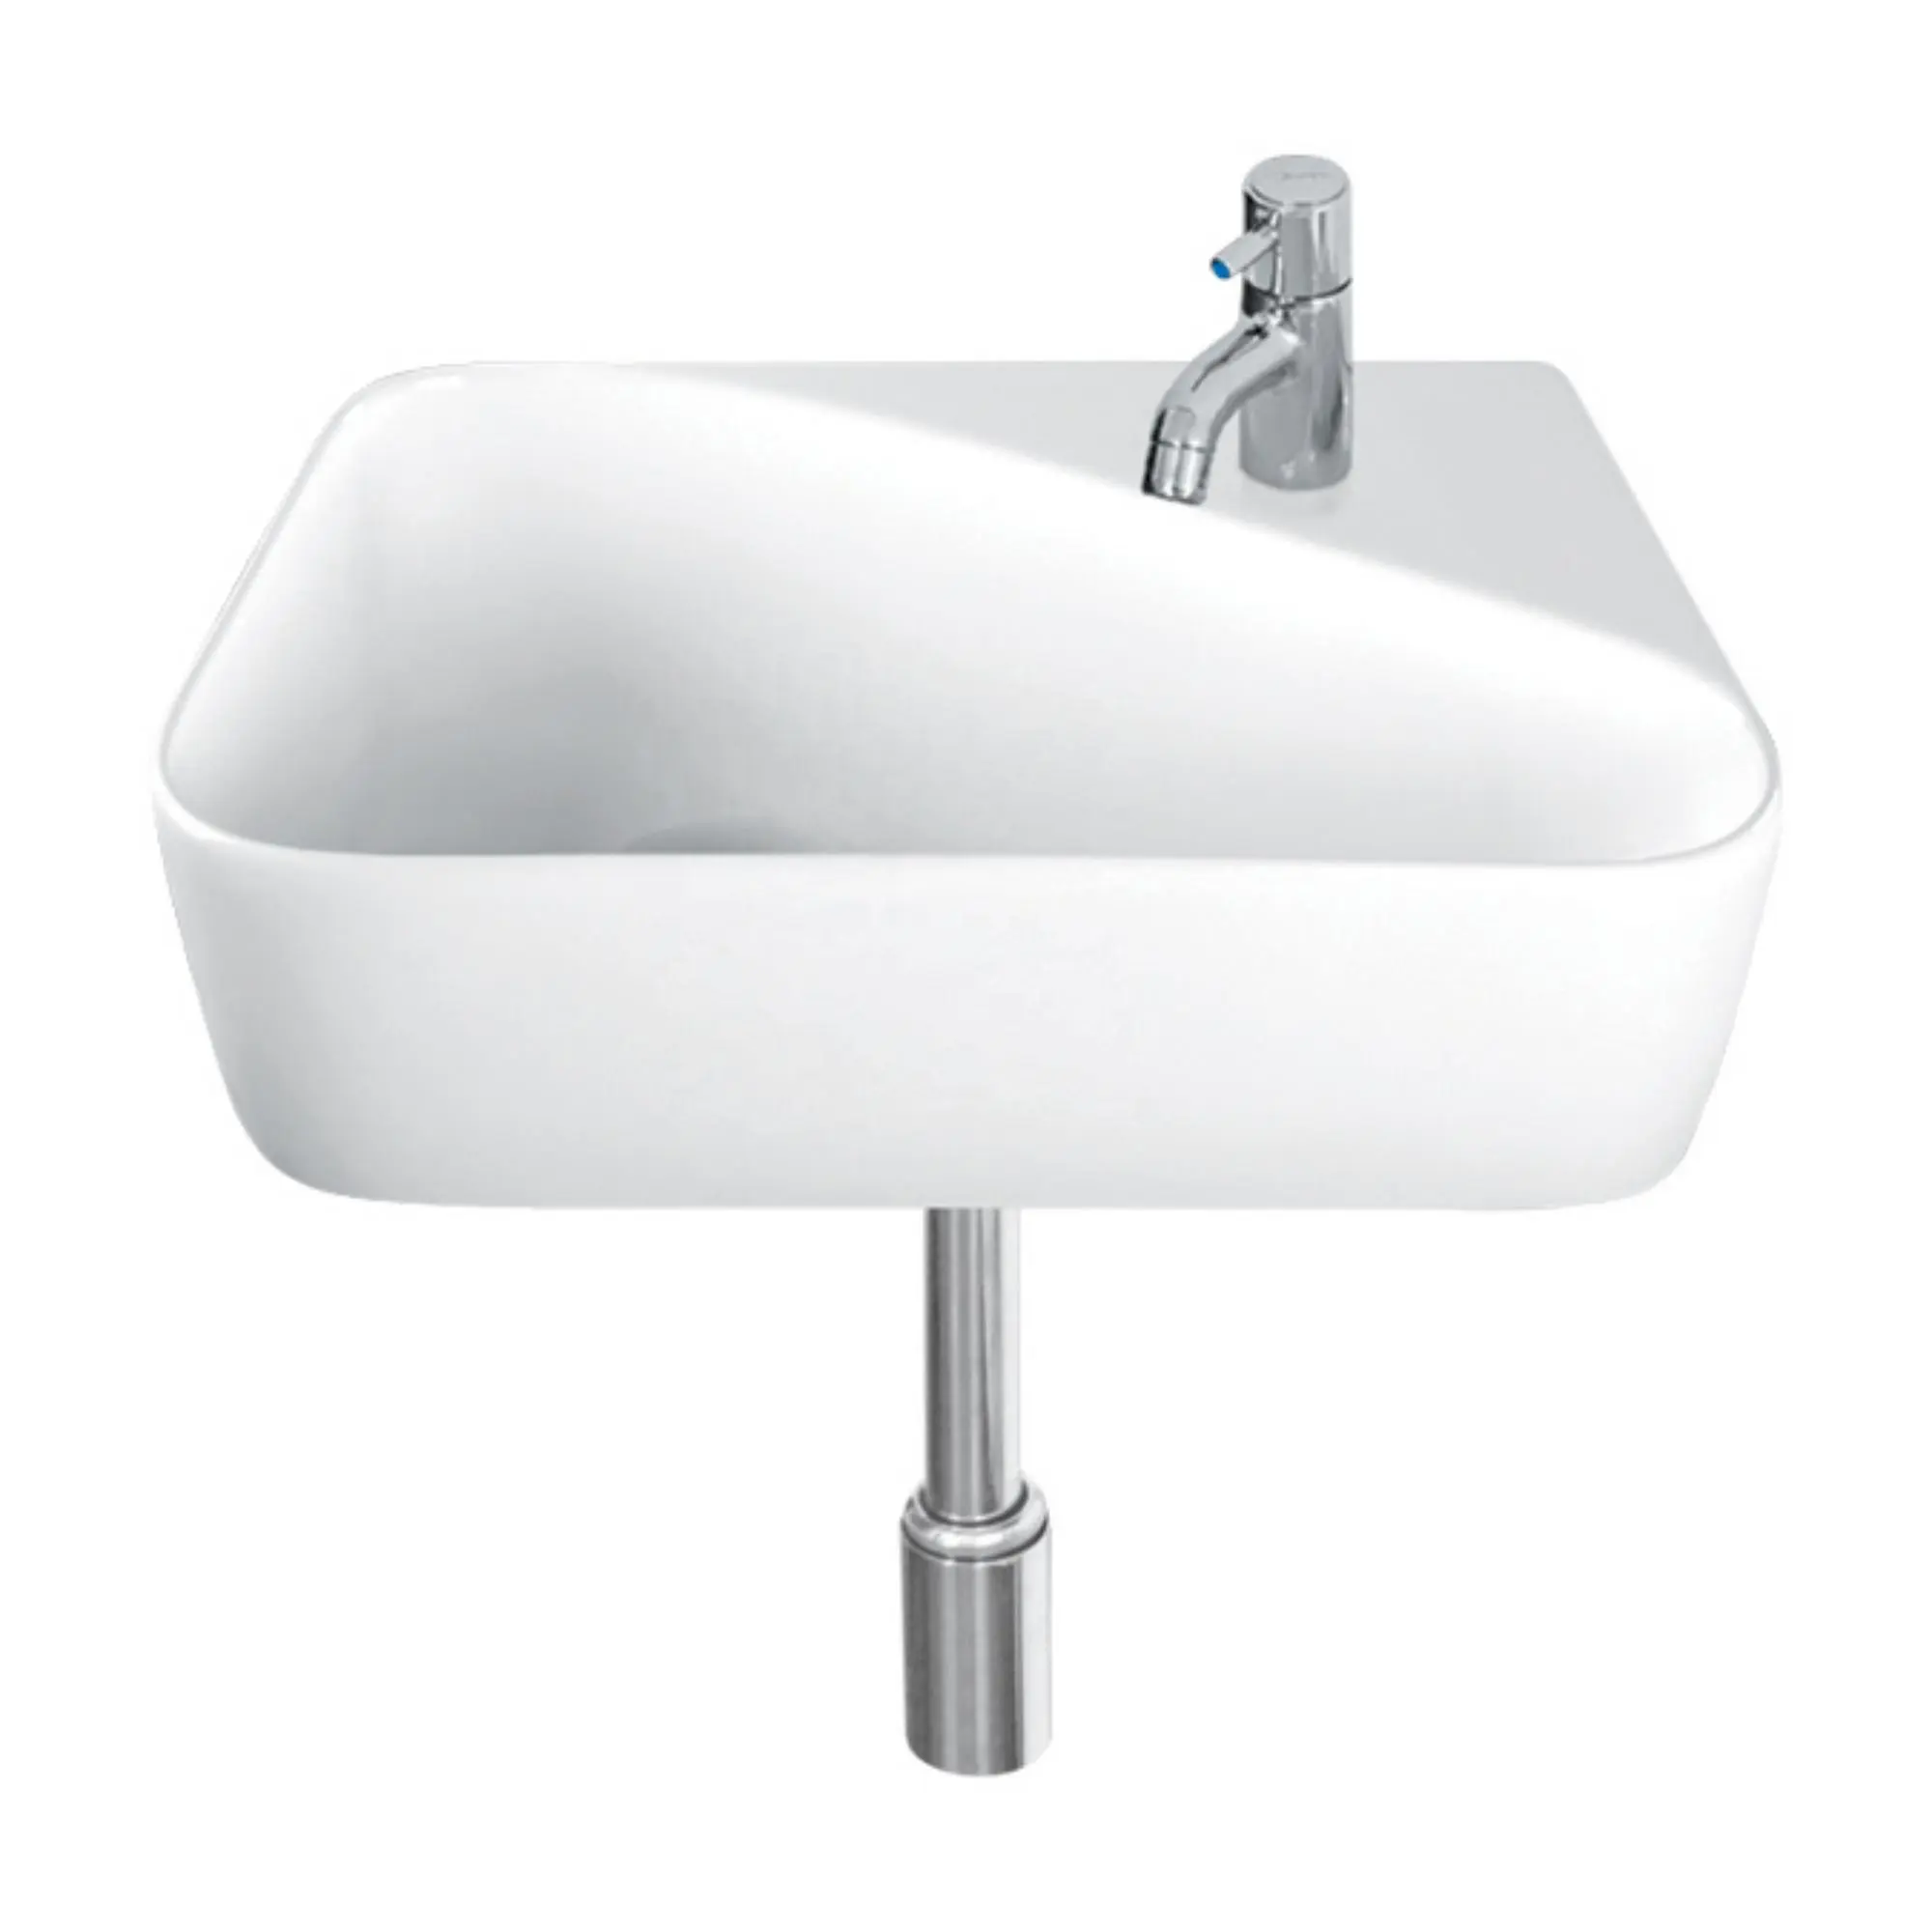 Dekoratif lüks Retro tasarımcı lavabo masa üstü otel banyo mutfak yıkama alan porselen seramik sağlık gereçleri